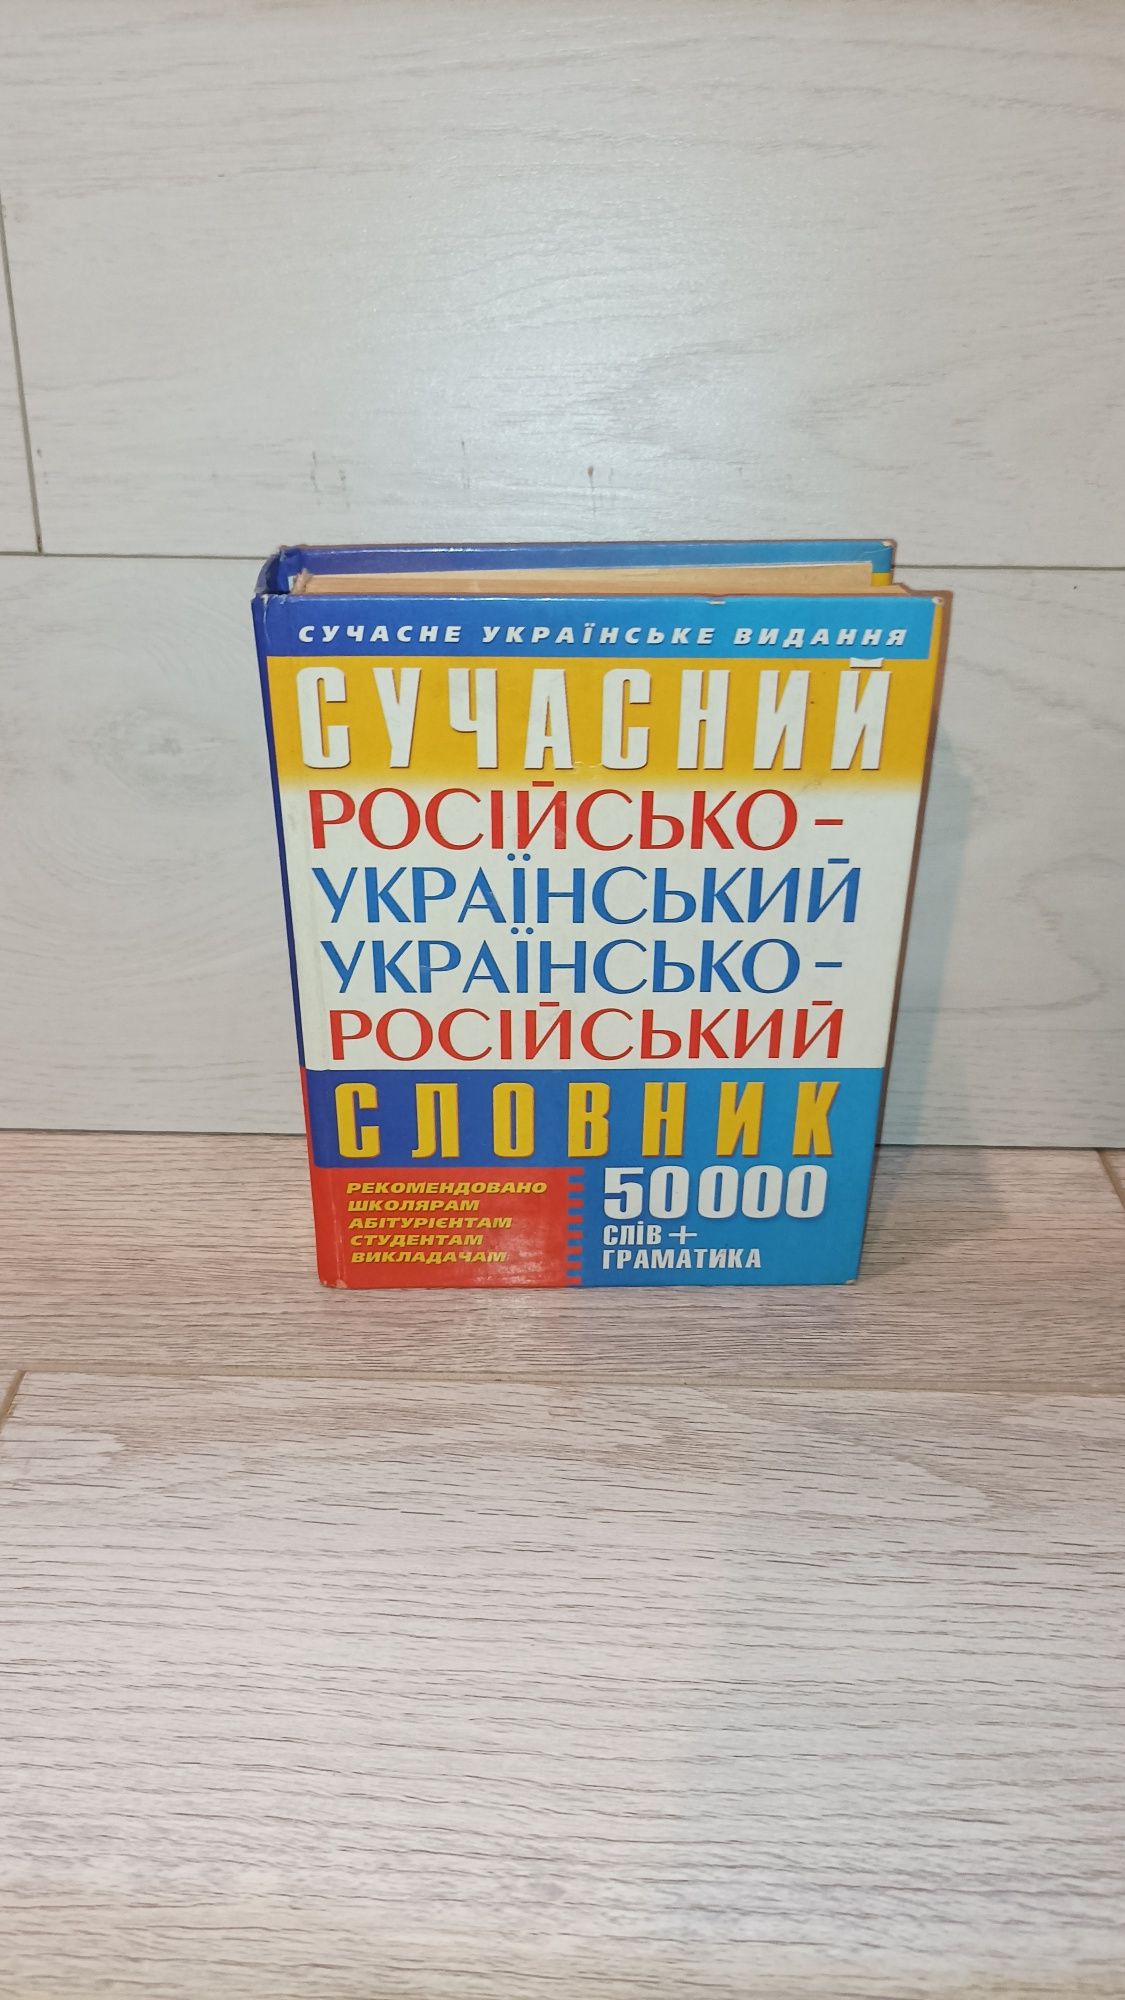 Словарь Словник русско-украинский украинско-русский